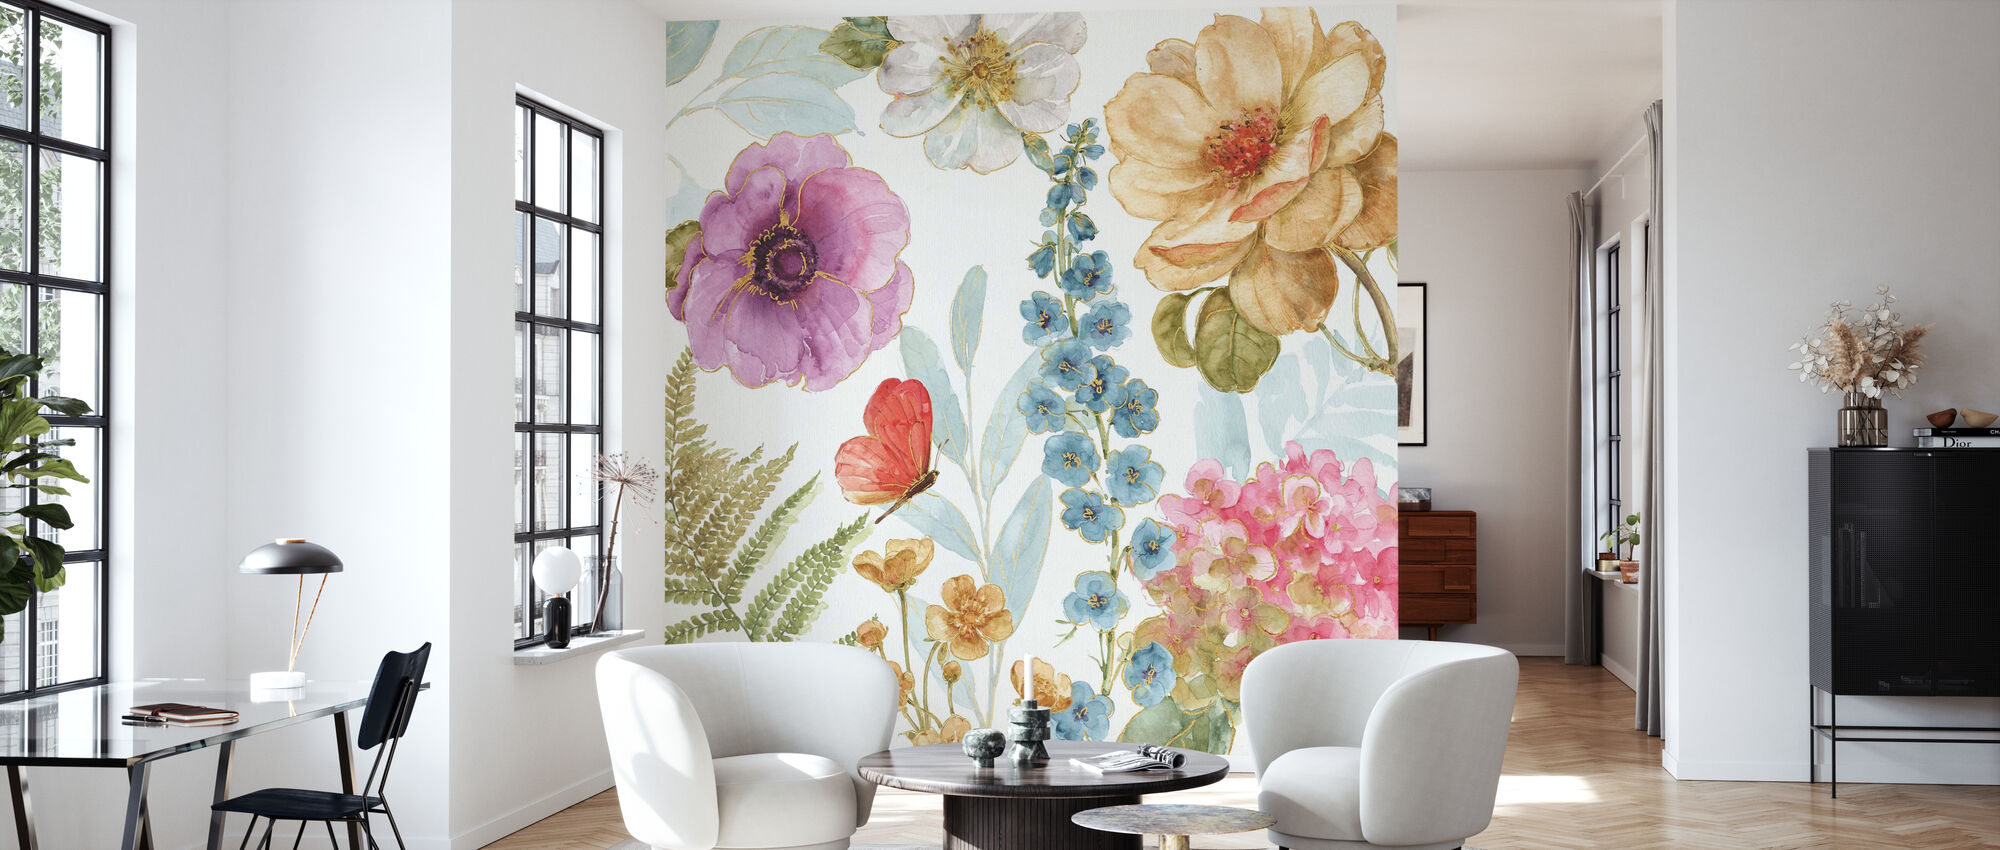 Garden Of Delight Wallpapers